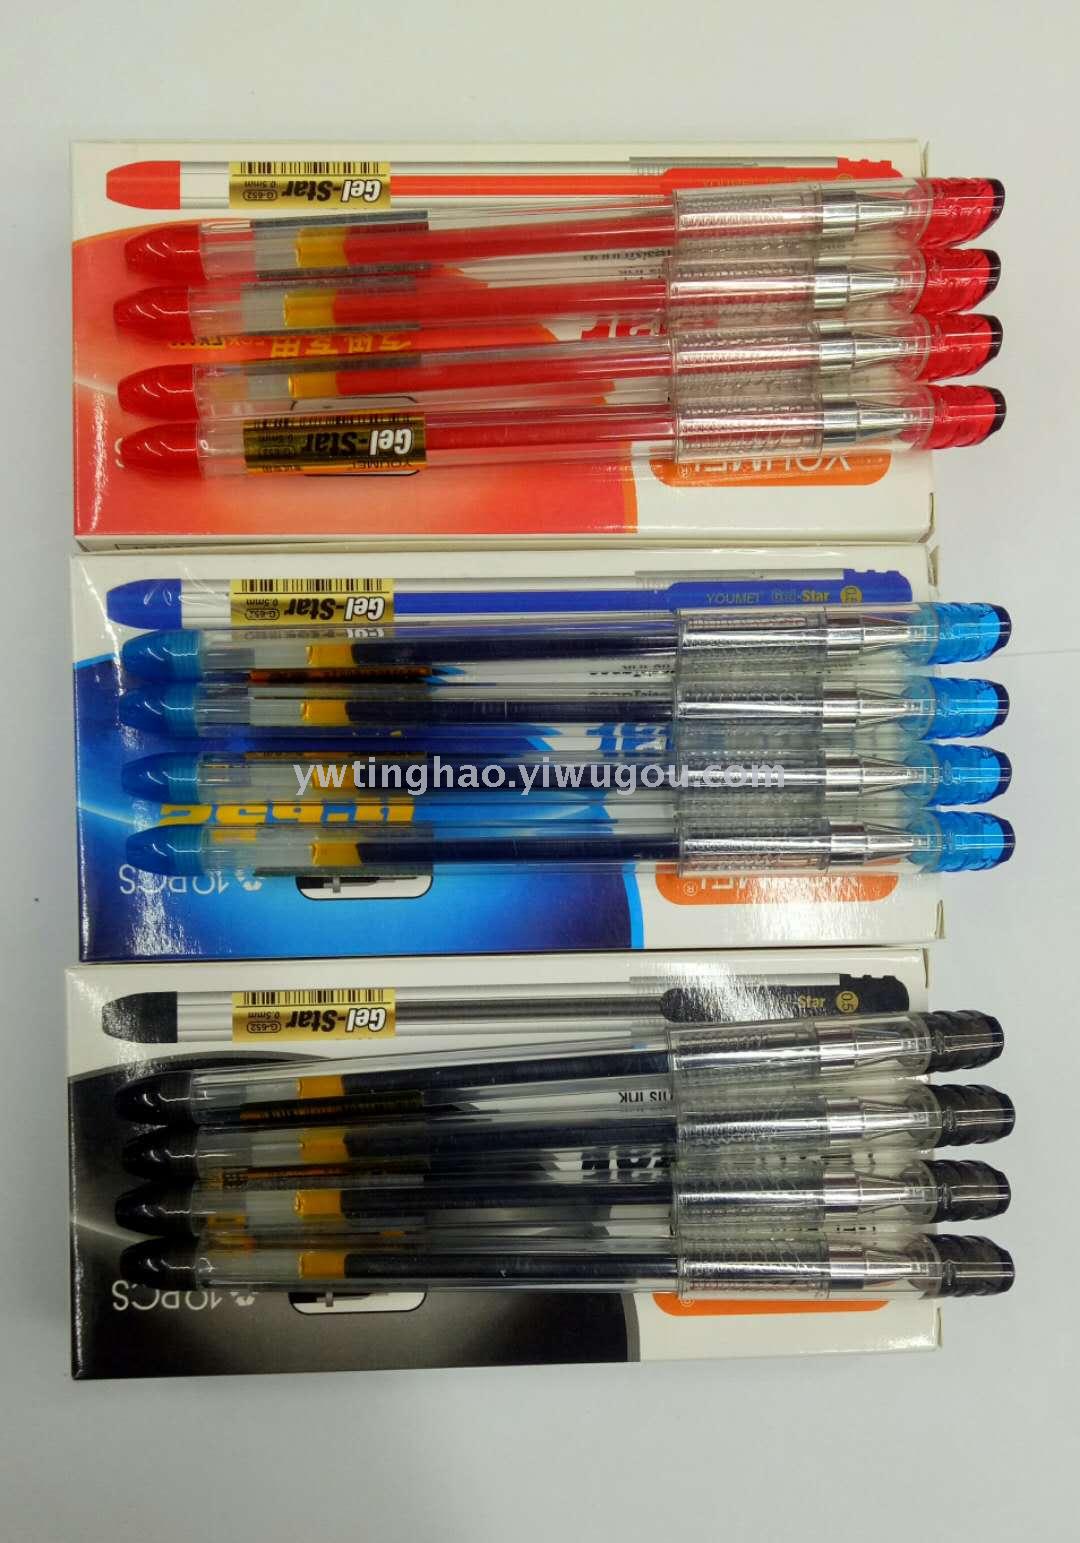 中性笔 针管中性笔 0.5mm中性笔 办公学生中性笔 学习用品 办公用品图